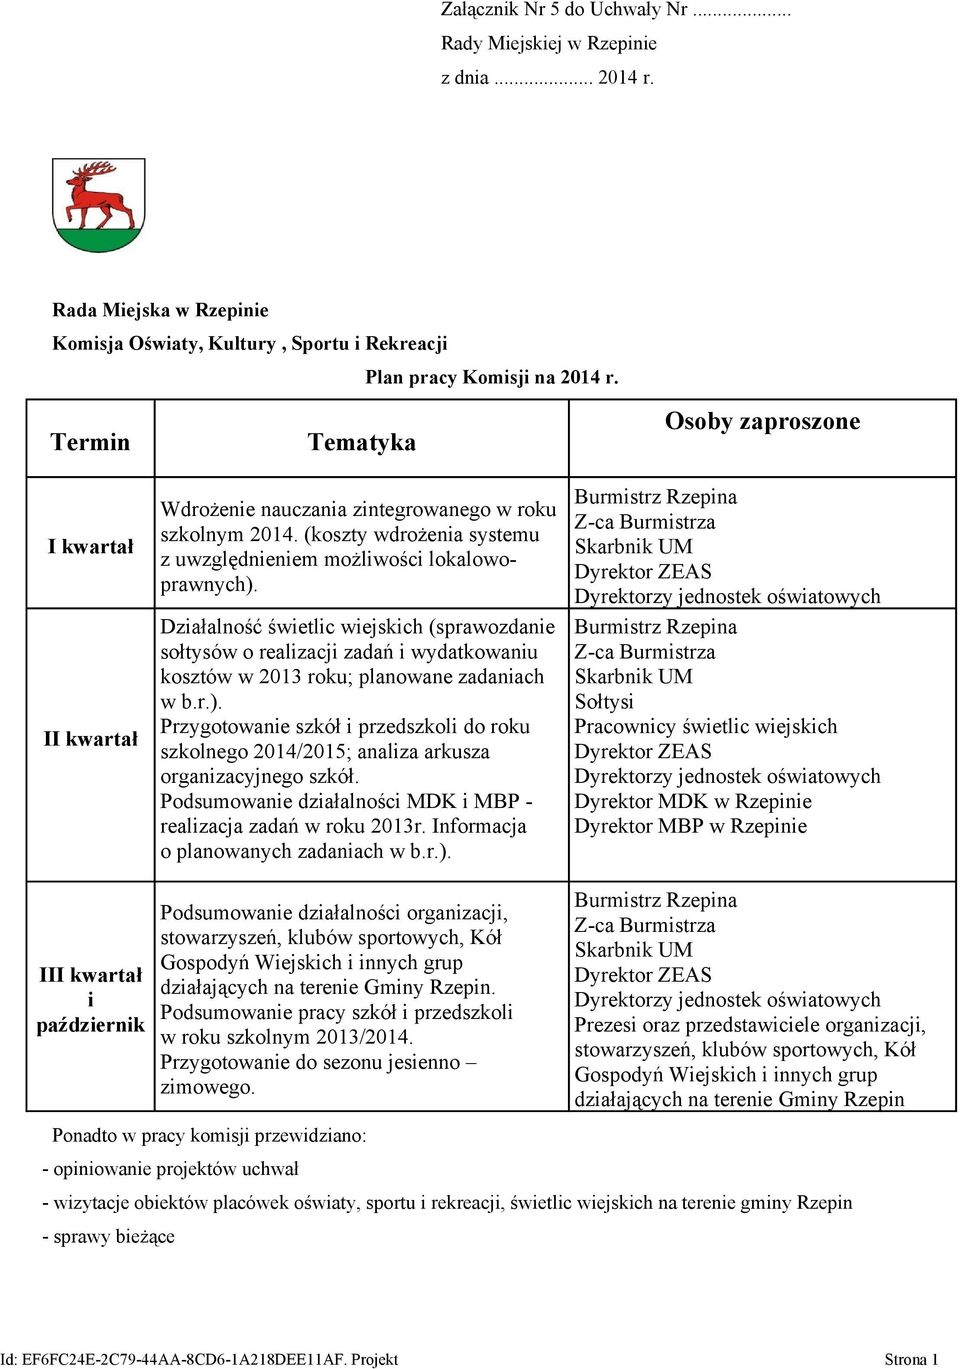 Działalność świetlic wiejskich (sprawozdanie sołtysów o realizacji zadań i wydatkowaniu kosztów w 2013 roku; planowane zadaniach w b.r.).